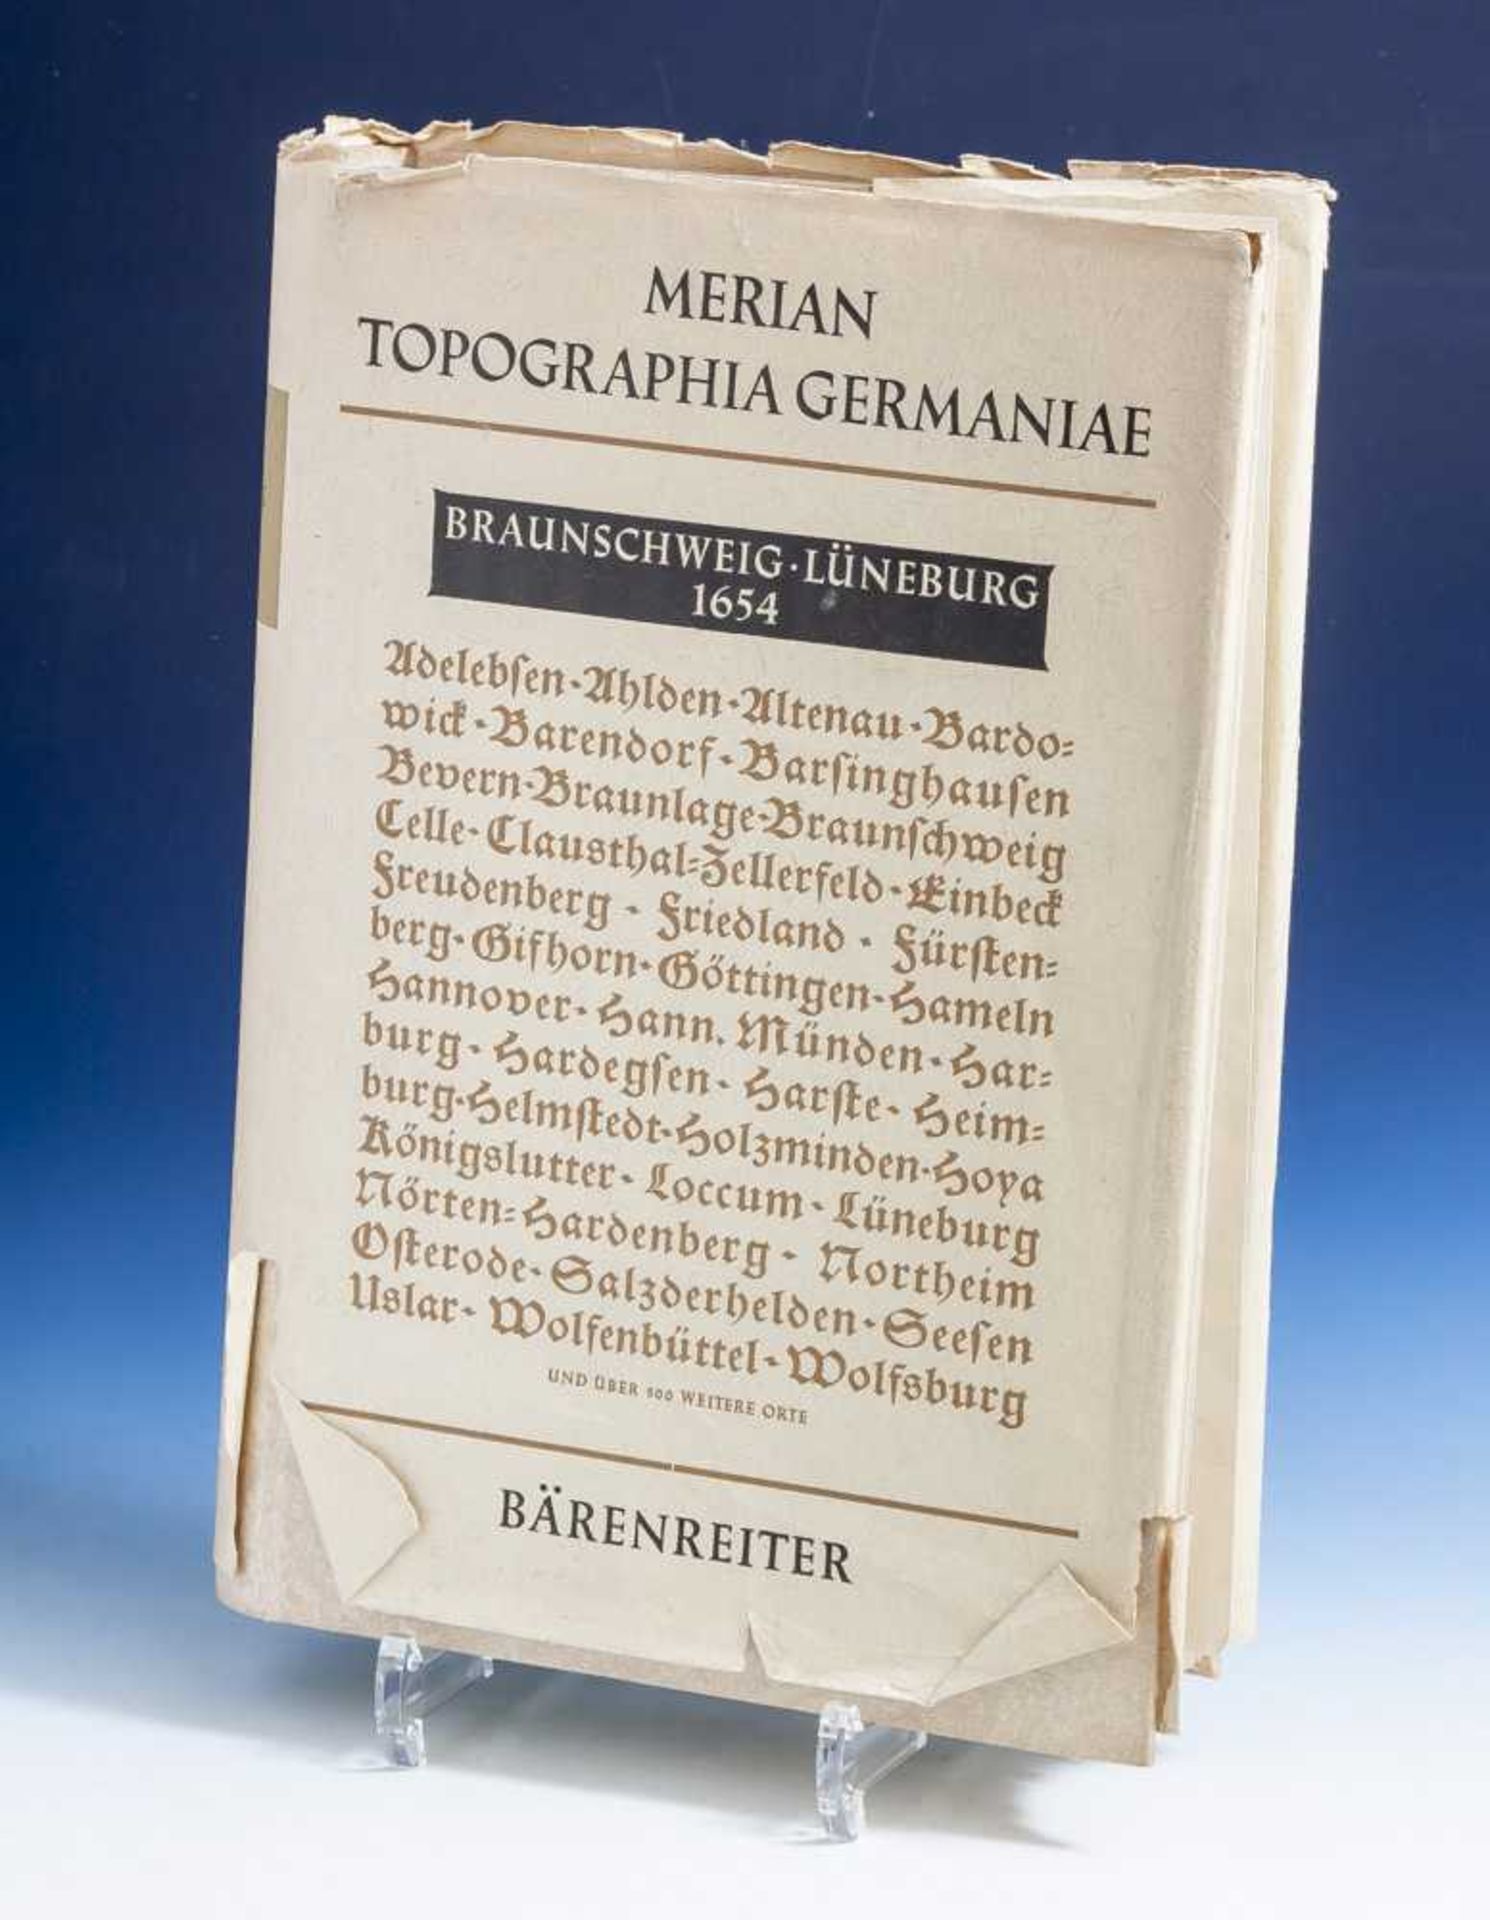 Merian Topographia Germaniae, Braunschweig, Lüneburg 1654, Faksimile-Ausgabe, LucasHeinrich Wüthrich